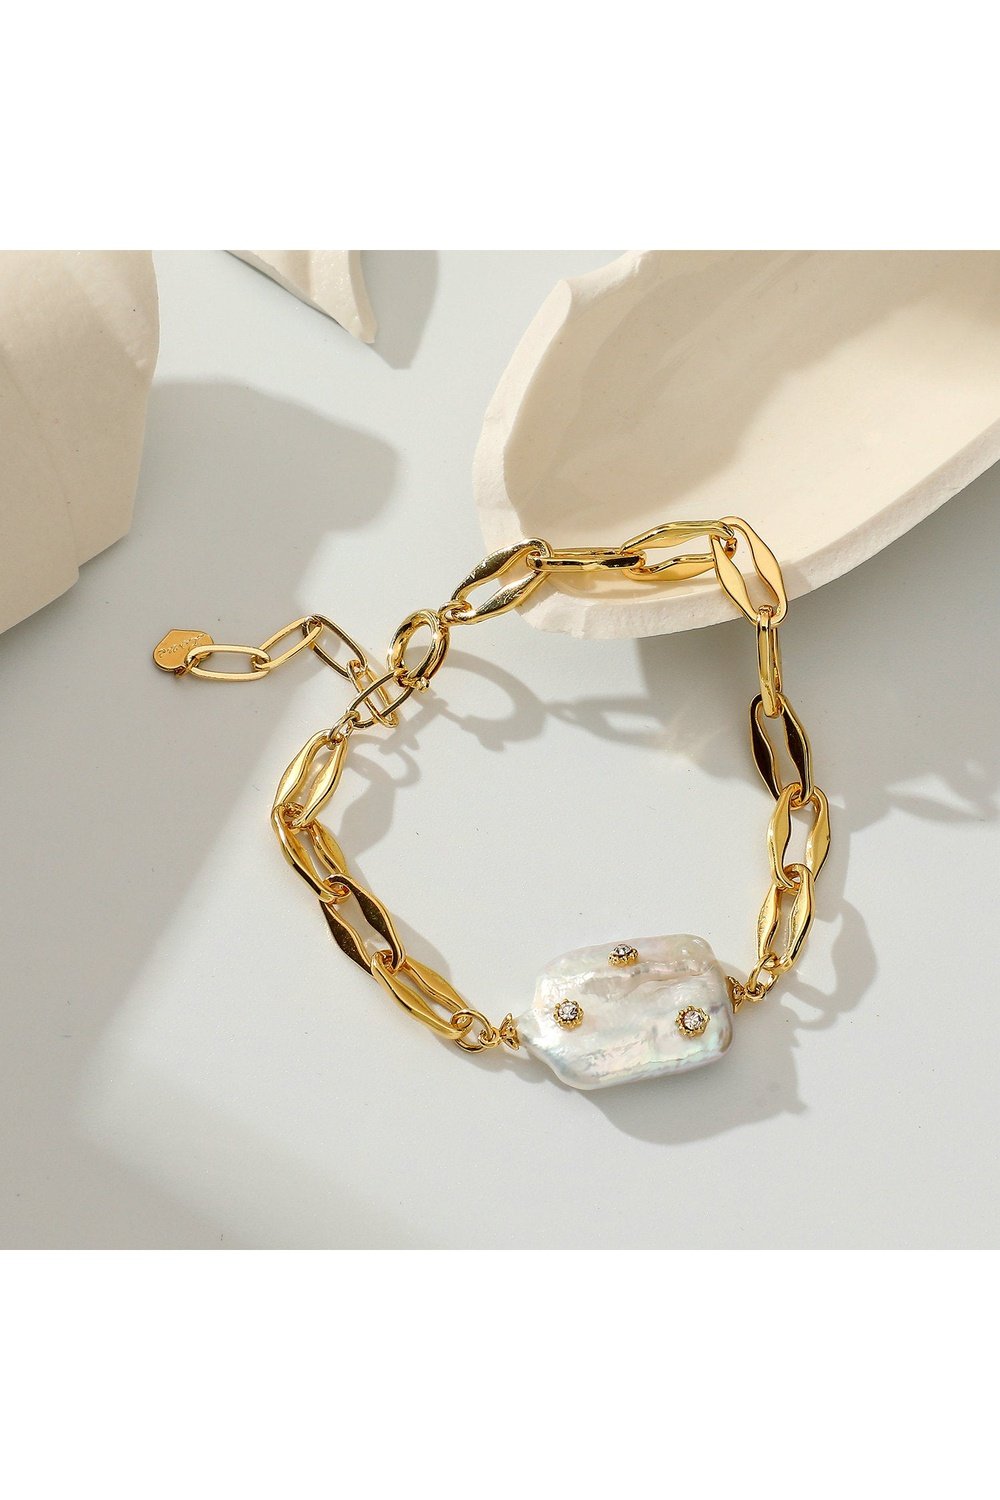 Gold Plated Bracelet - Bracelets - FITGGINS